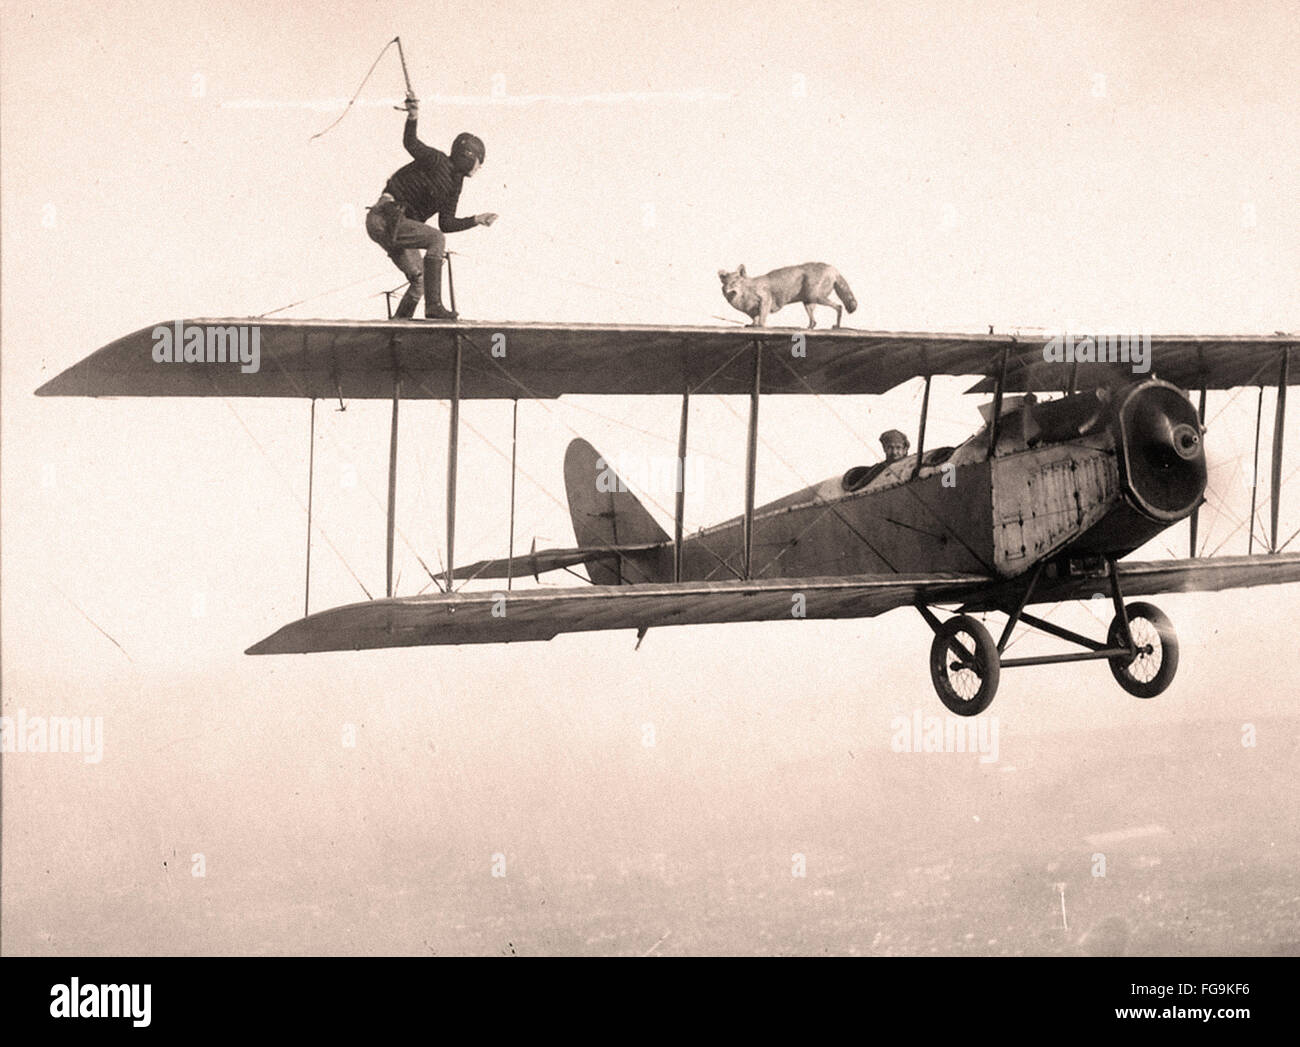 Cascadeur et chien sur les ailes d'un avion - Années 1920 Banque D'Images